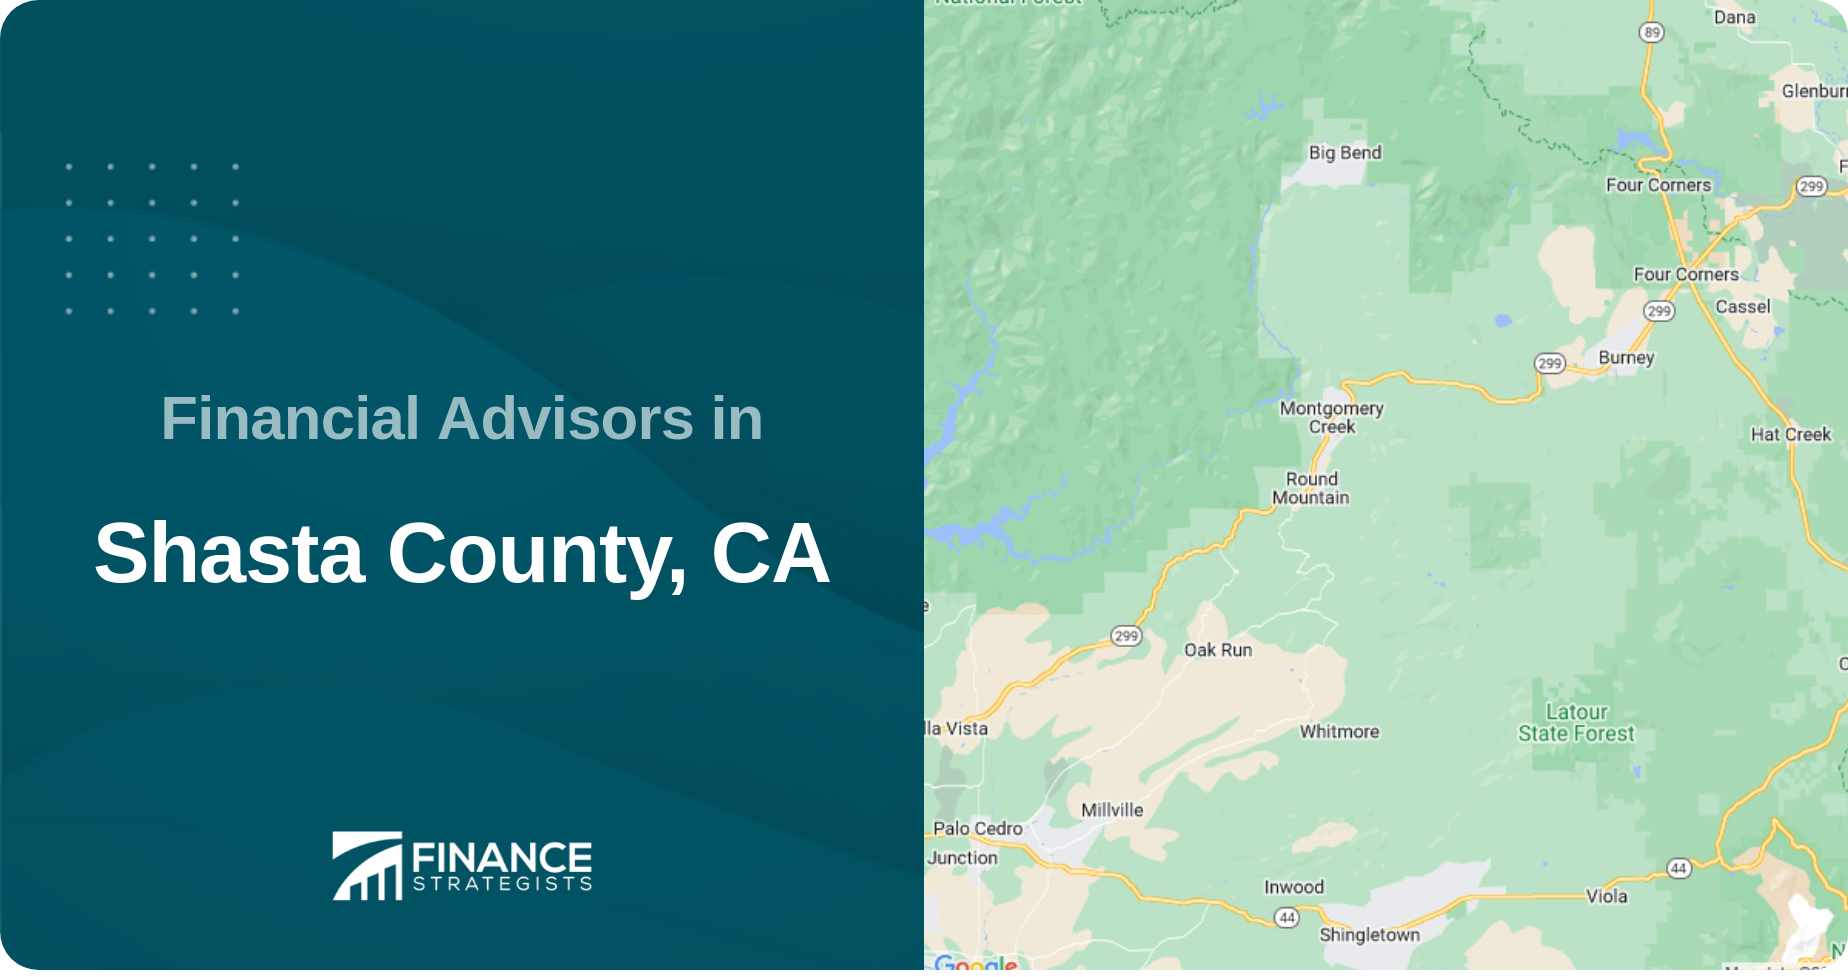 Financial Advisors in Shasta County, CA